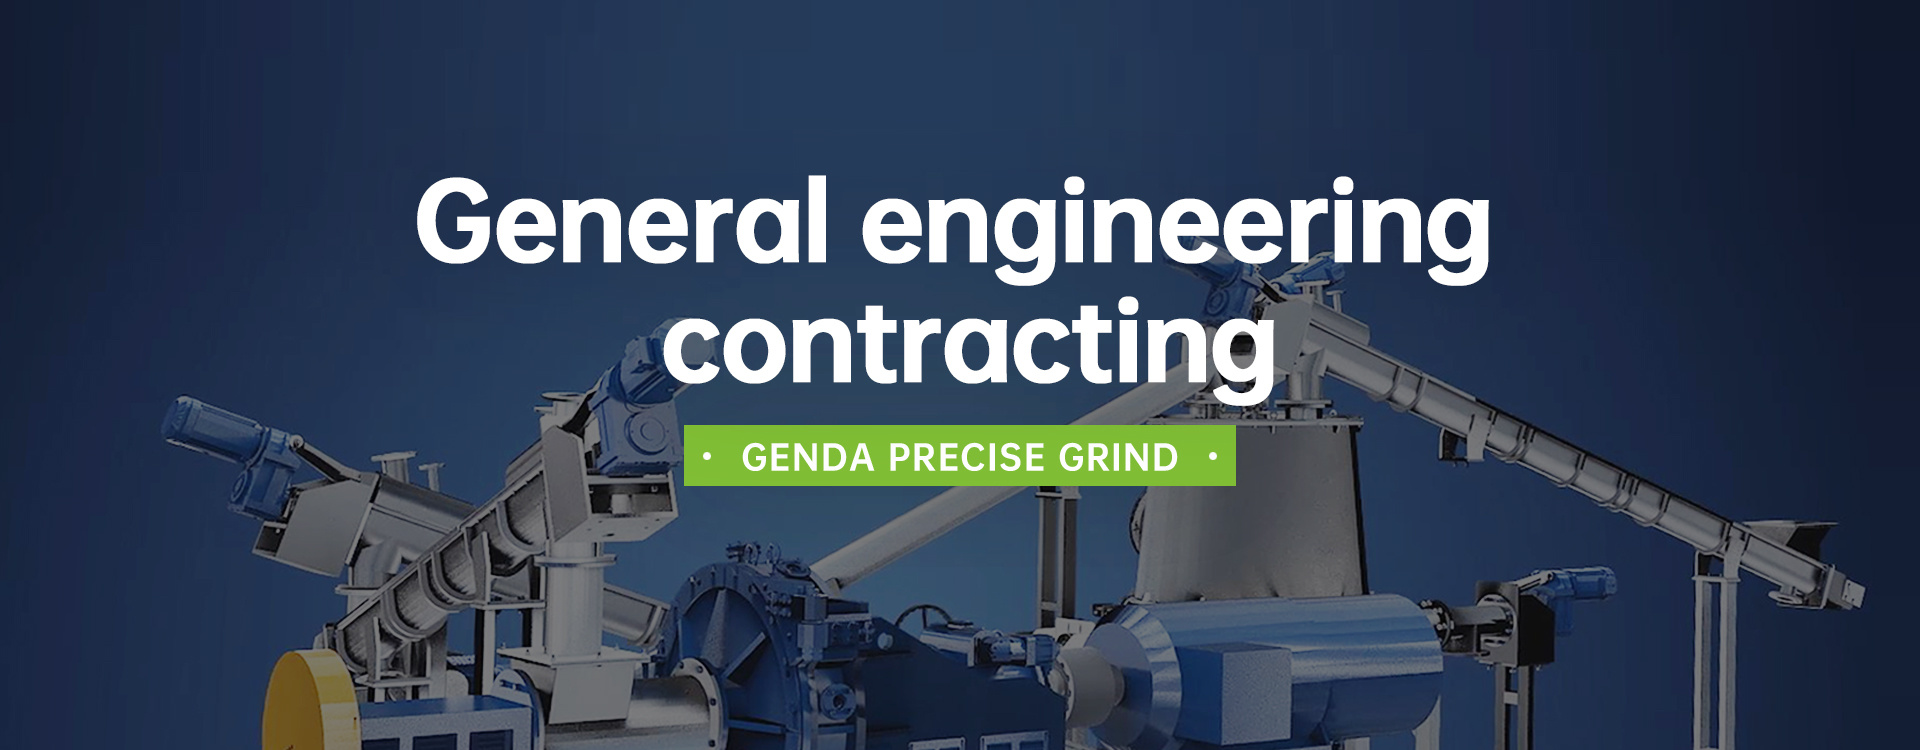 General engineering contracting